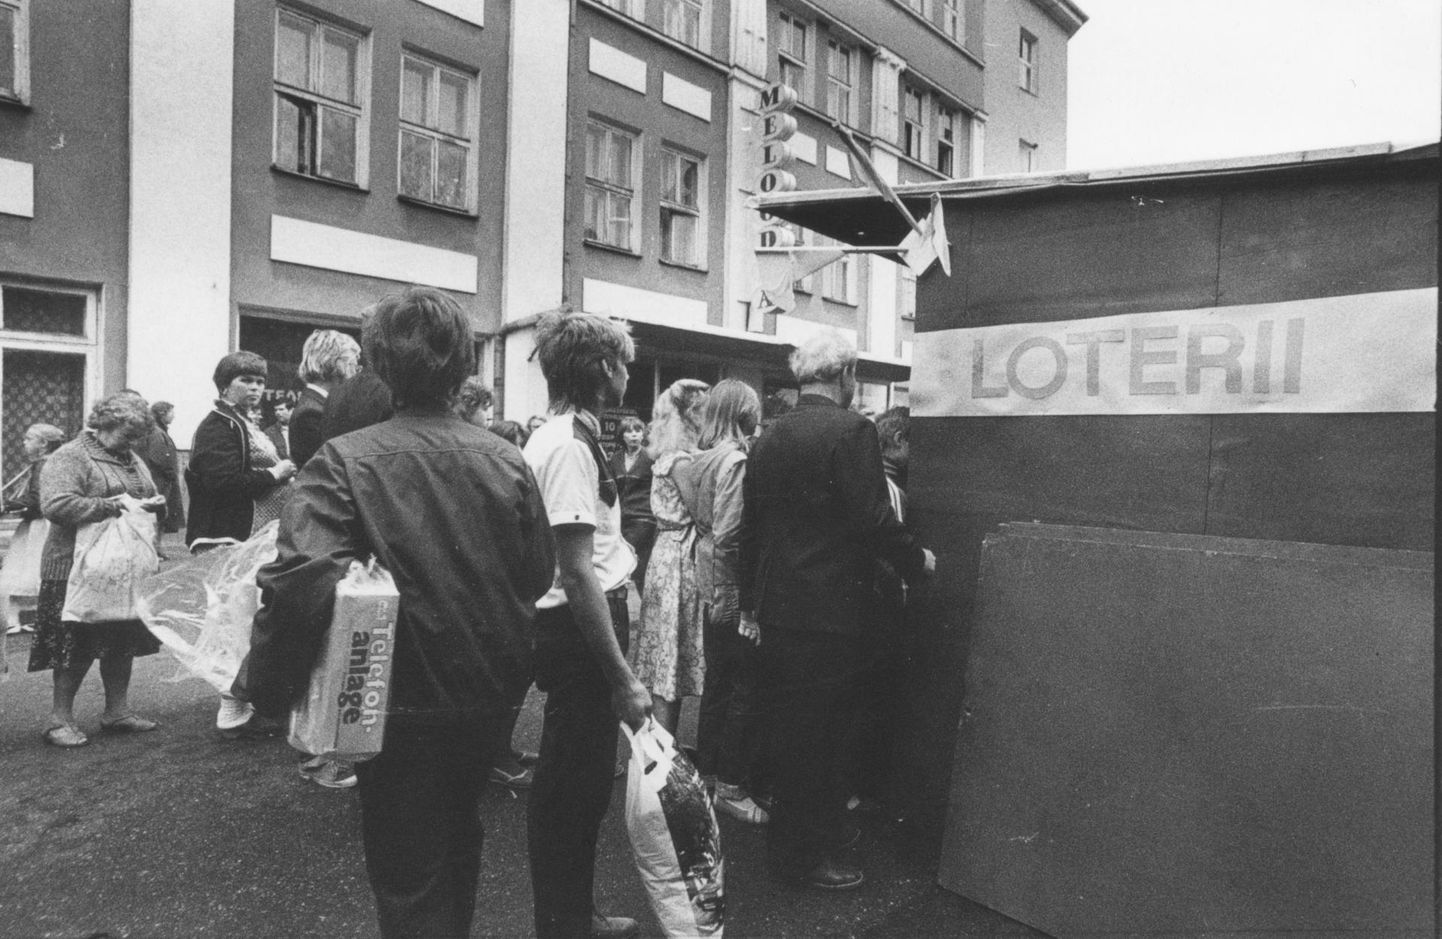 Loteriid ja õnneloosid olid nõukogude ajal väga populaarsed, müügiputkade taga vonklesid alati sabad.